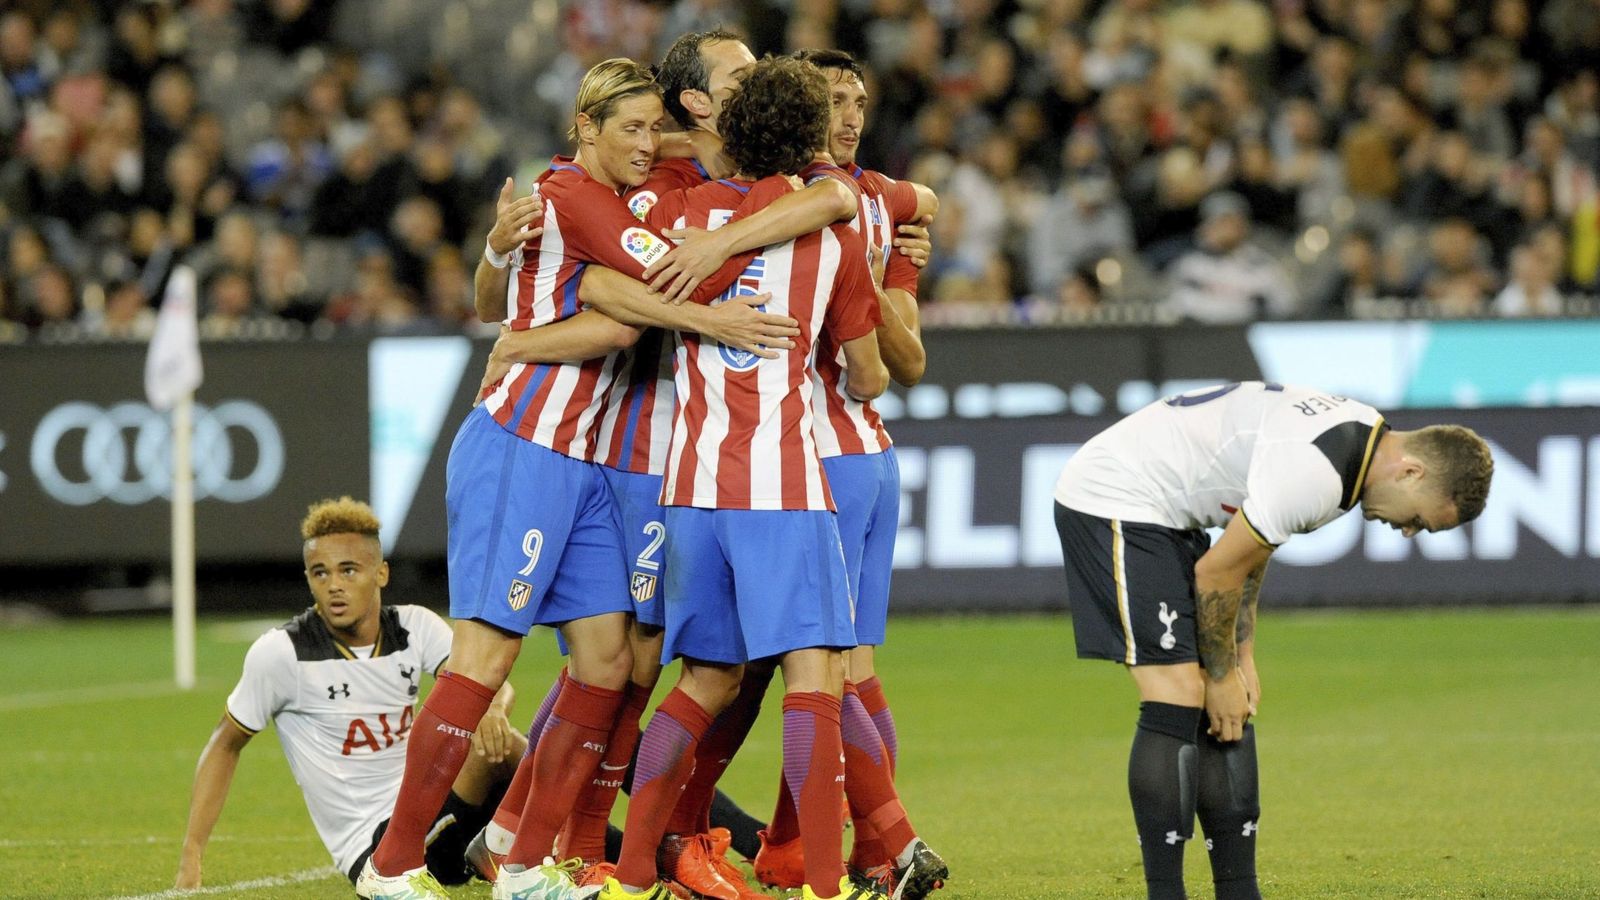 Foto: Los jugadores del Atletico Madrid celebran el gol marcado por Godín (Joe Castro/EFE)